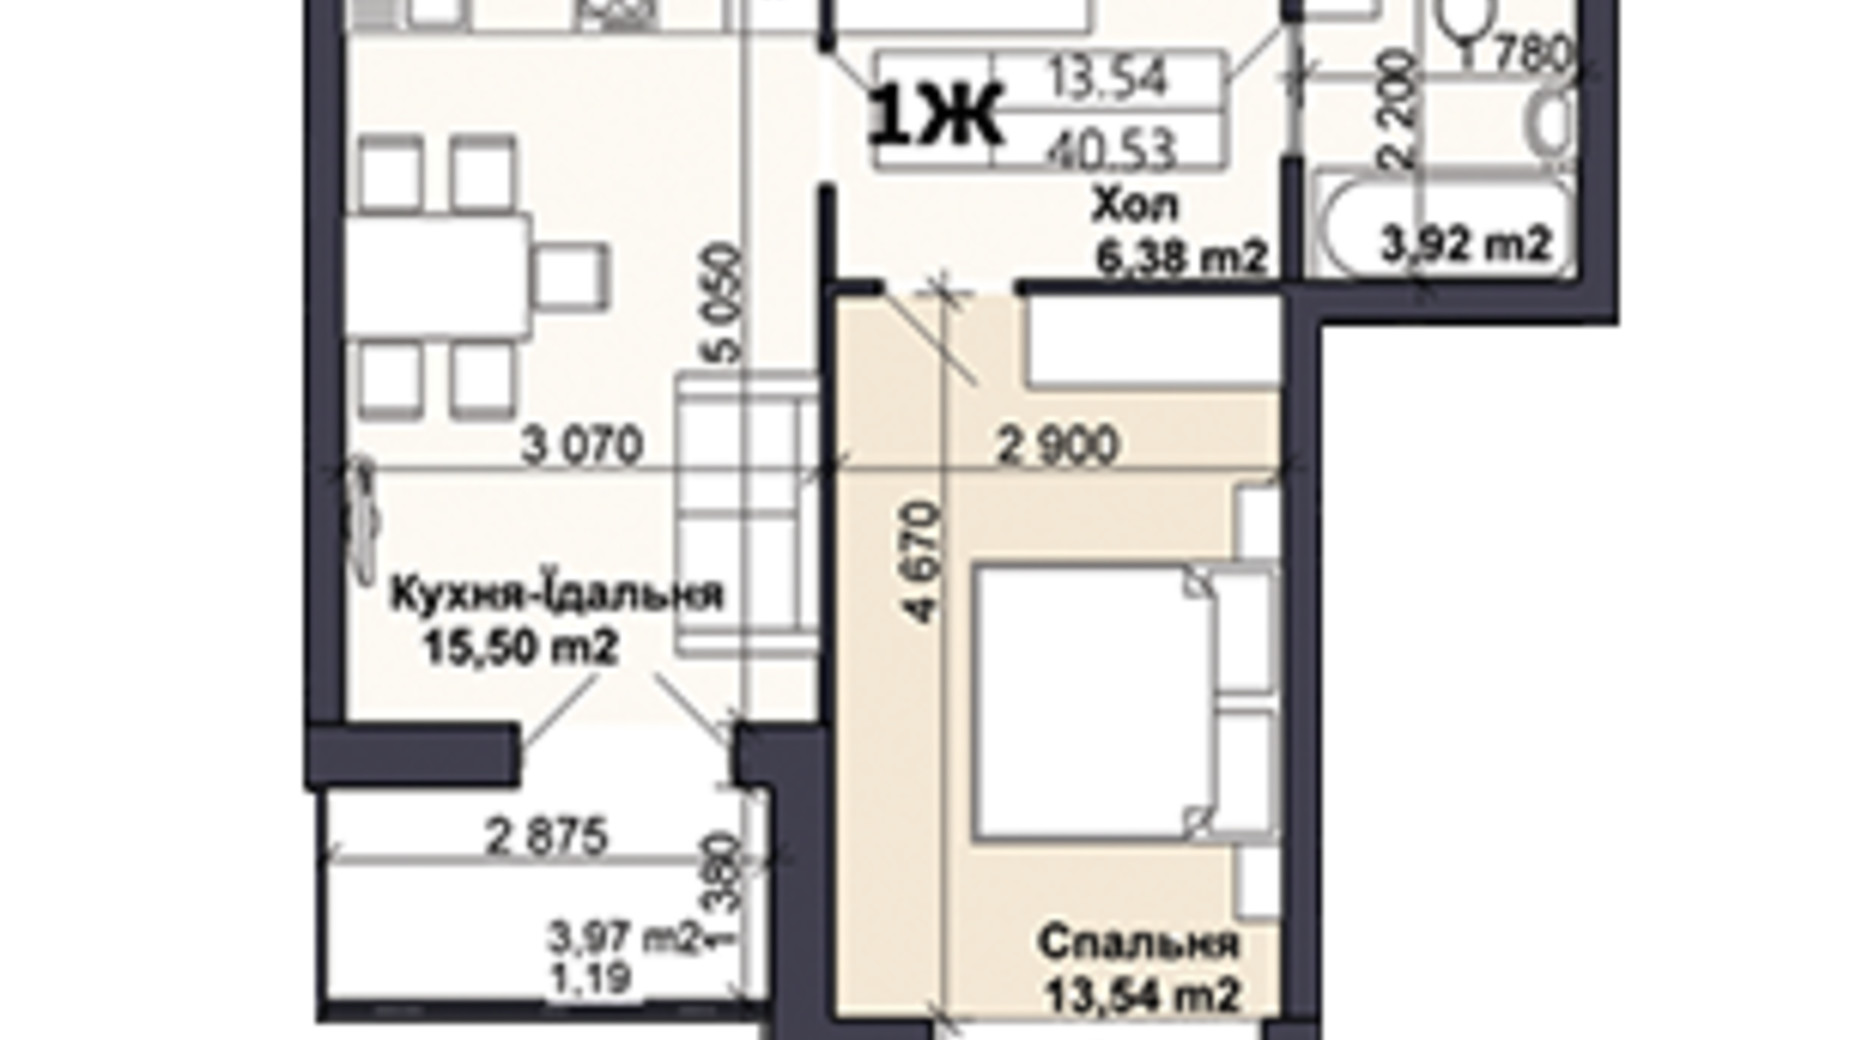 Планировка 1-комнатной квартиры в ЖК Саме той 40.53 м², фото 585413